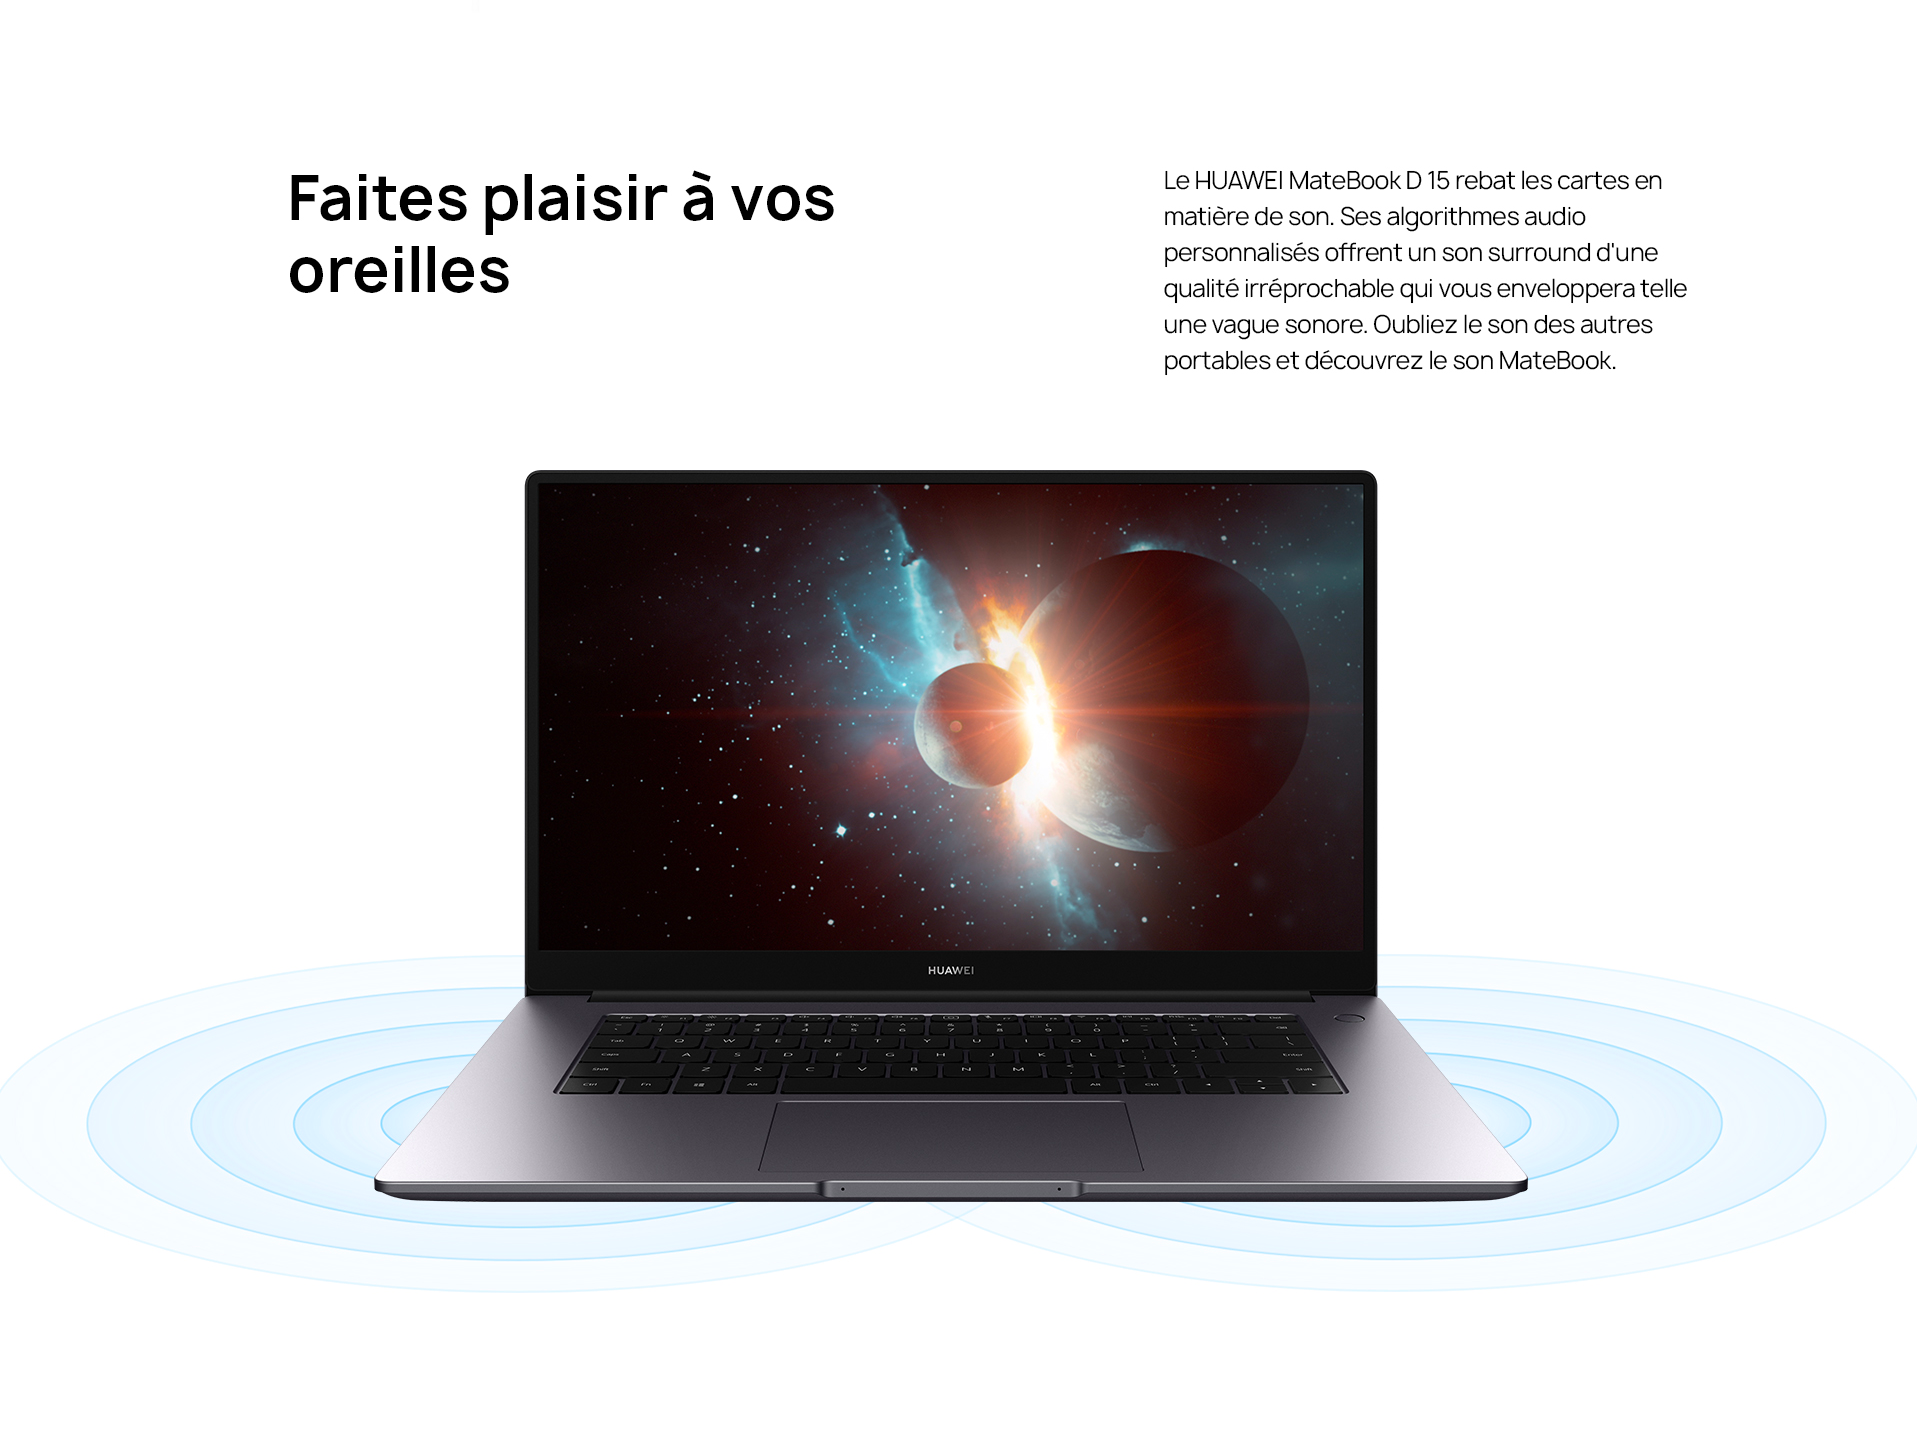 Huawei MateBook D15 à la conquête du marché marocain